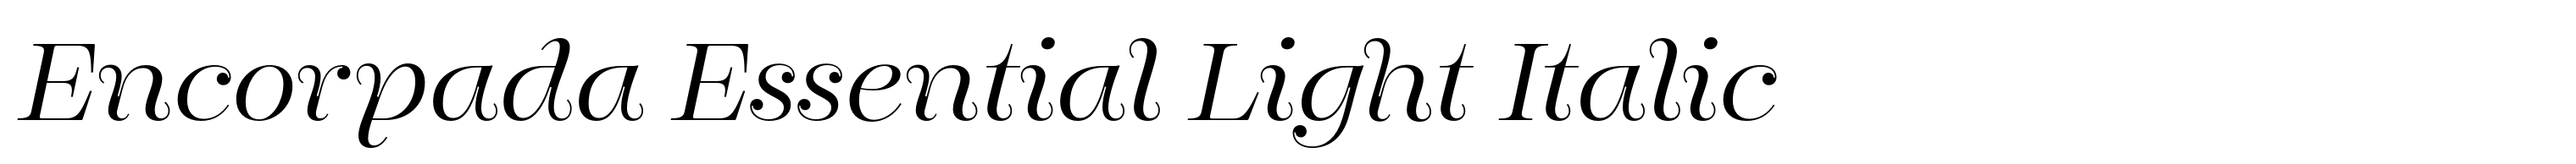 Encorpada Essential Light Italic